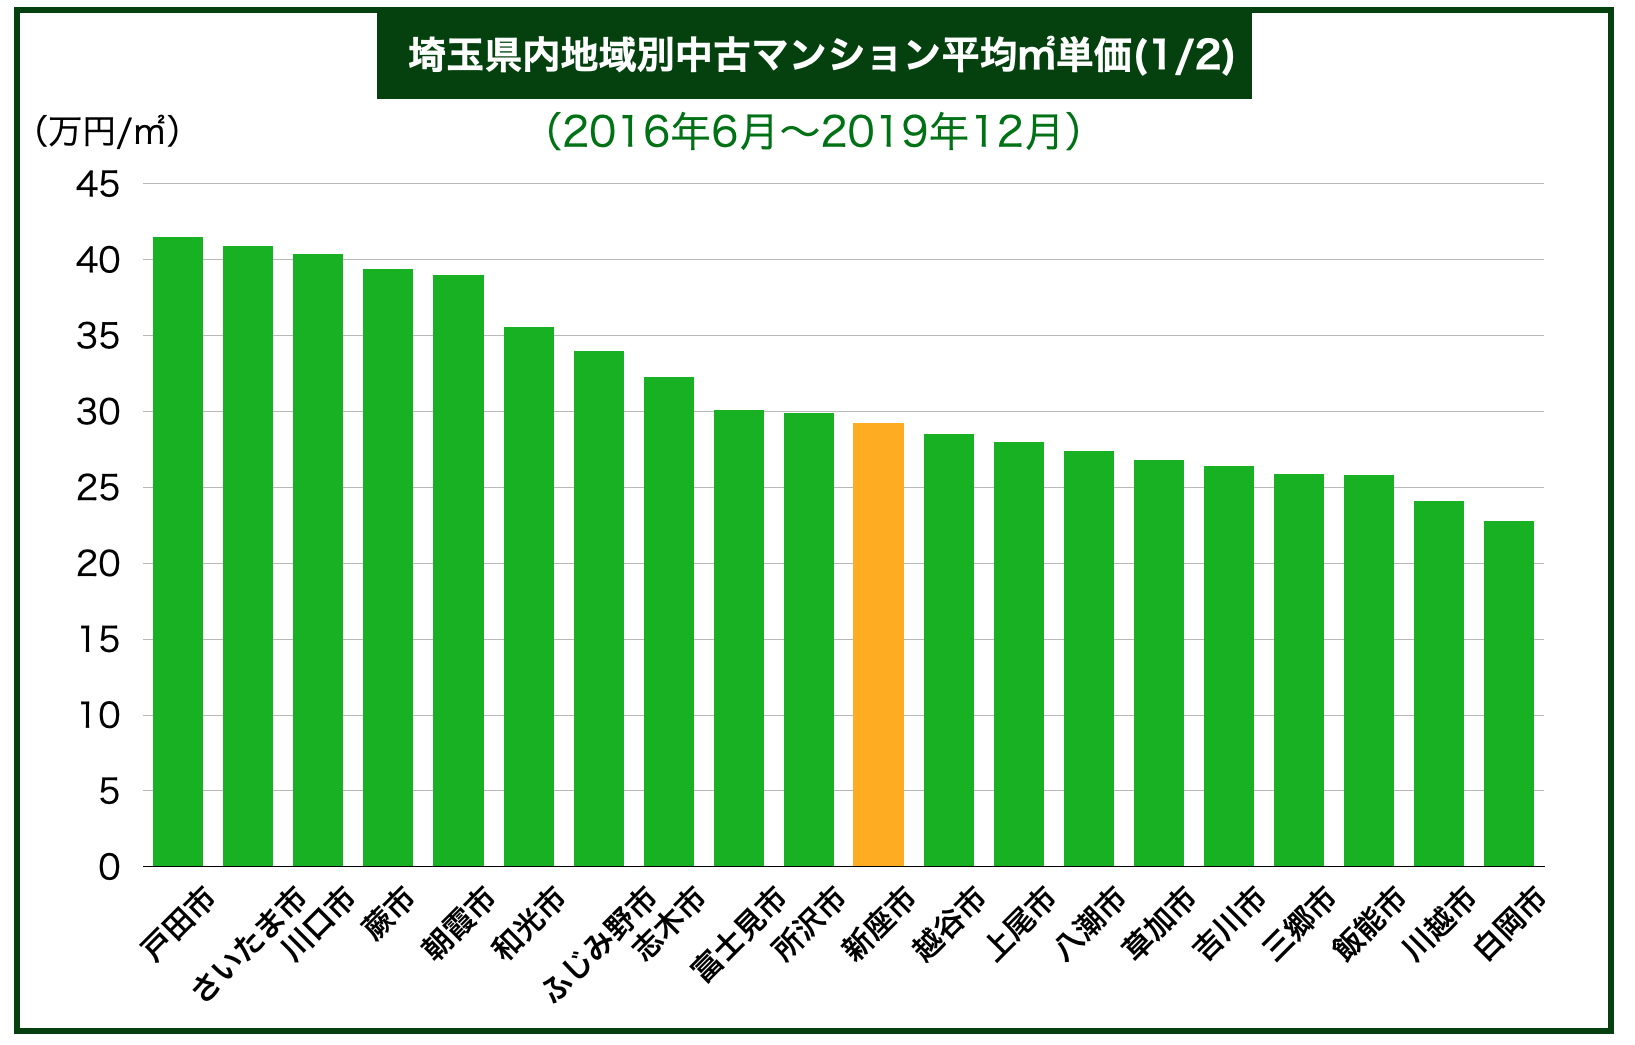 埼玉県下内地域別中古マンション平均㎡単価